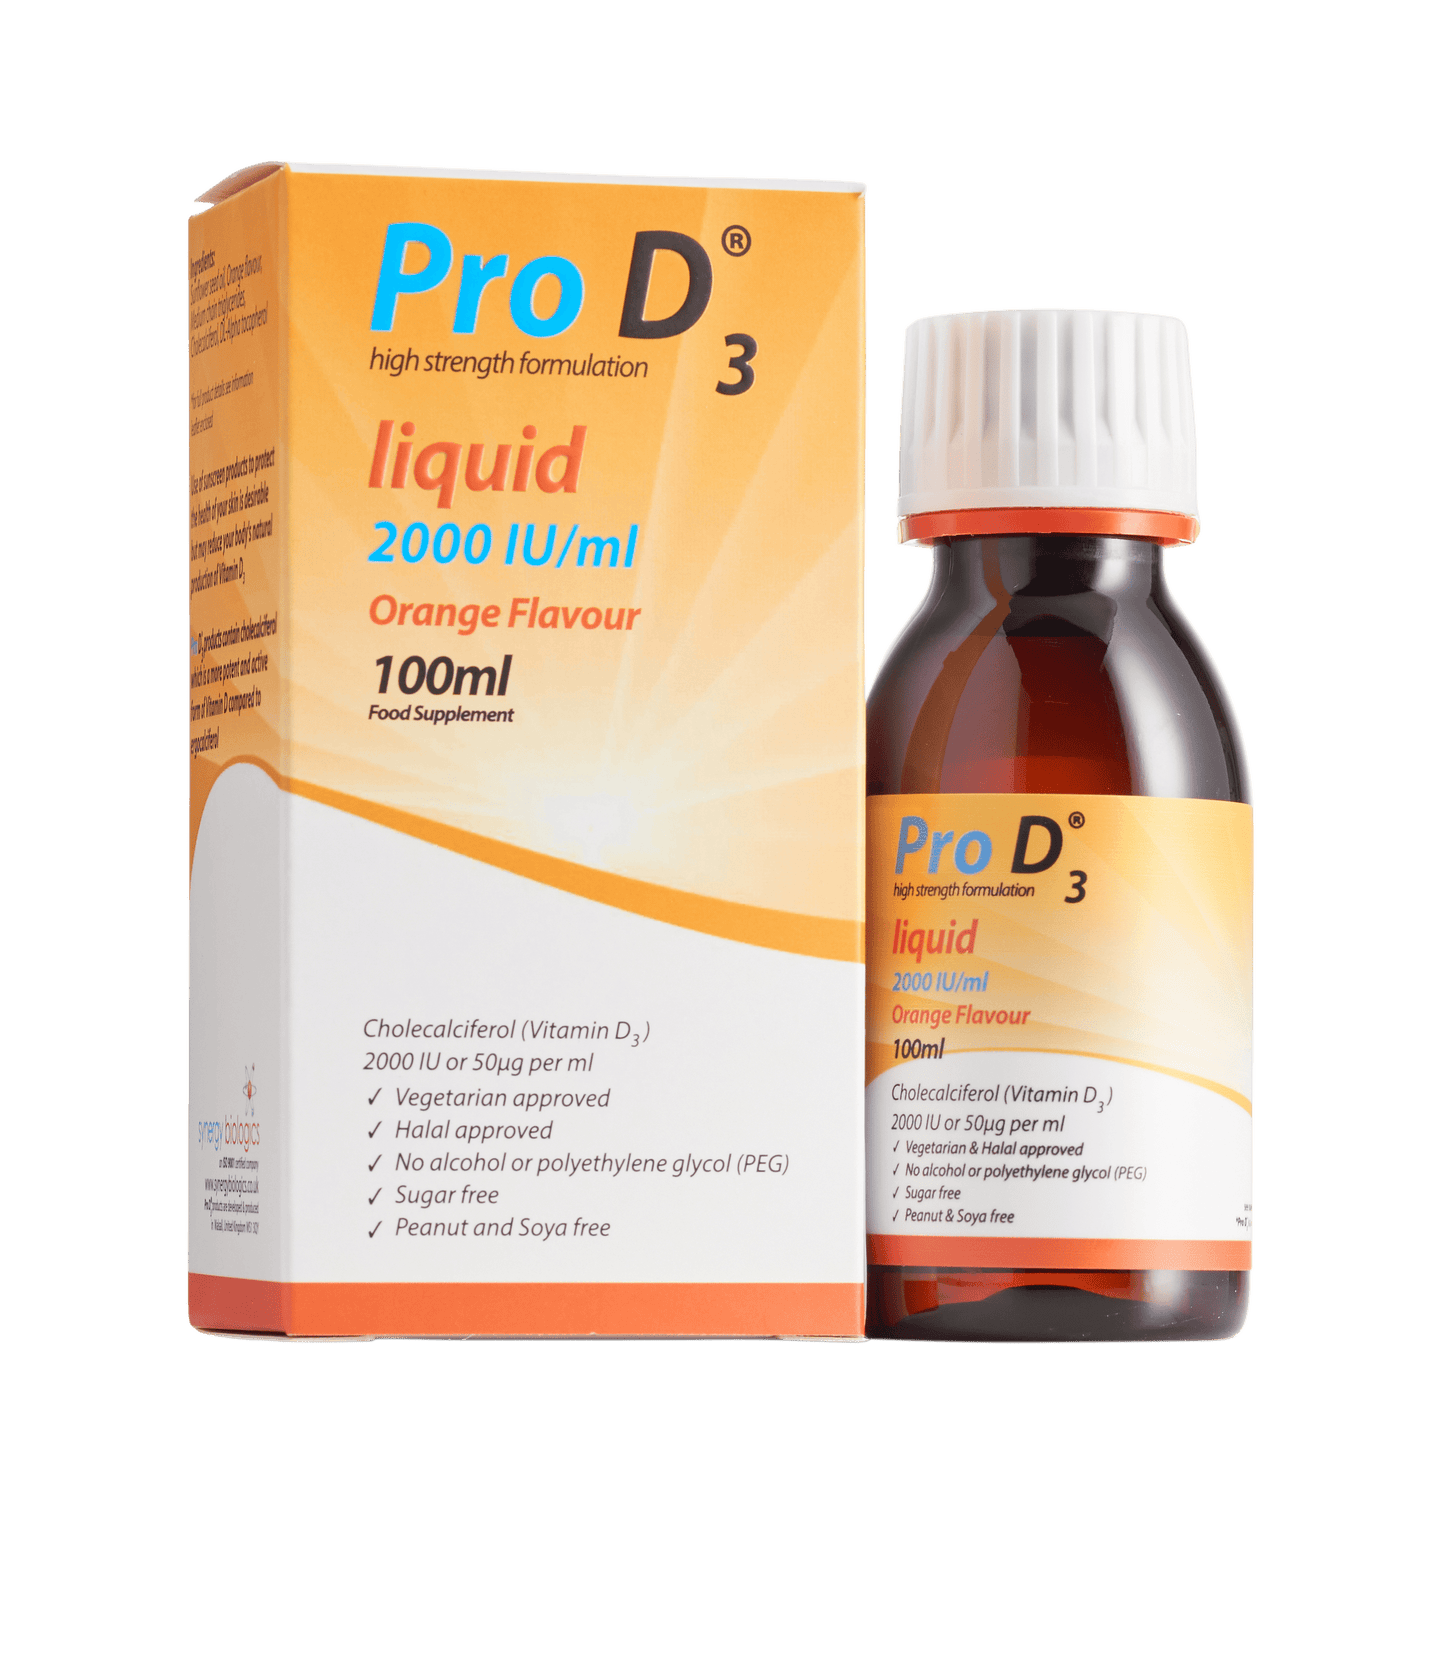 Pro D3 Liquid - 2000 IU per ml - 100ml Bottle with Syringe